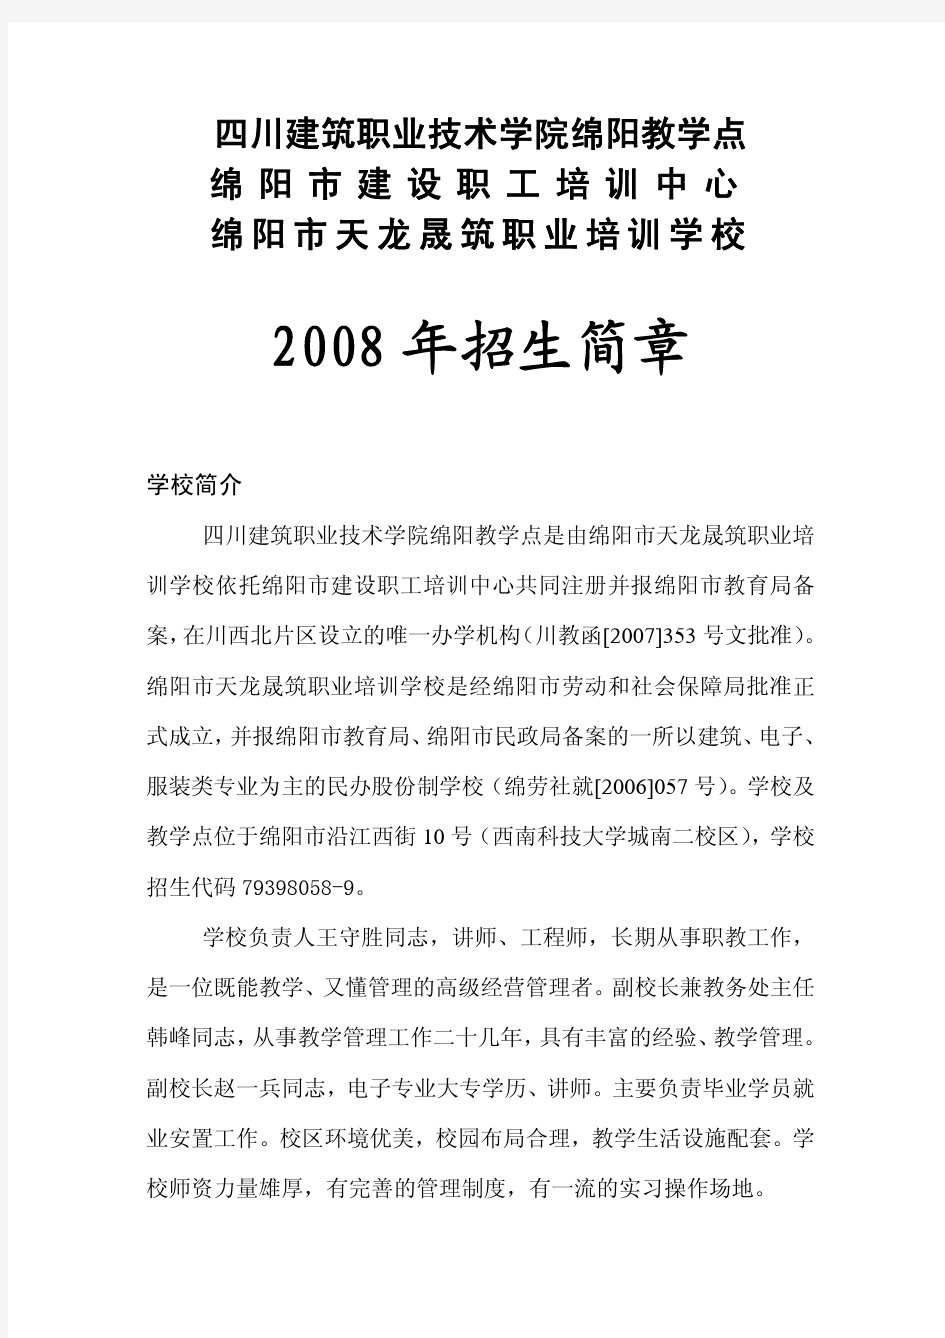 四川建筑职业培训学院绵阳教学点-2008 年招生简章